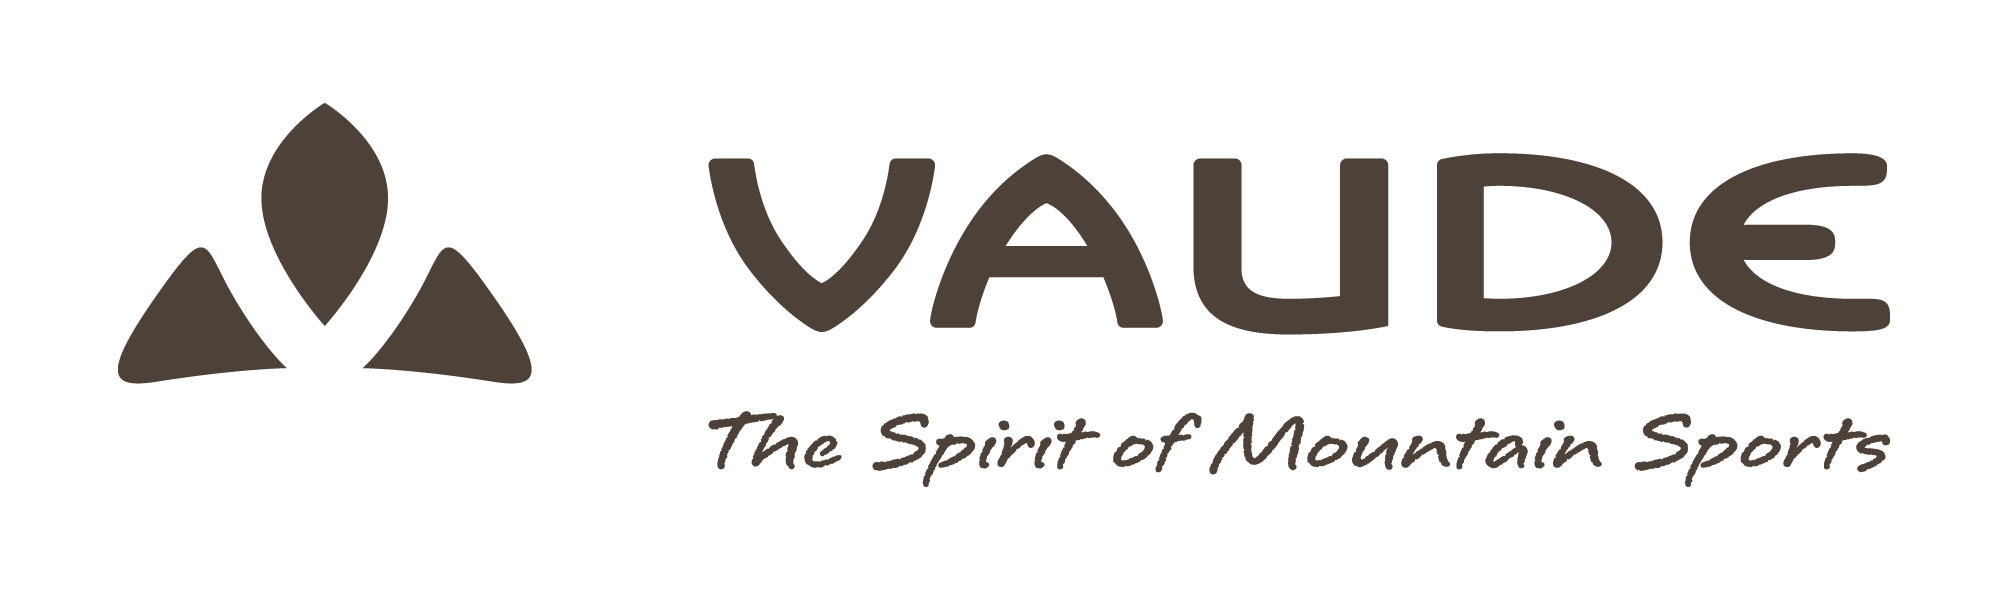 VAUDE - The Spirit of Mountain Sports